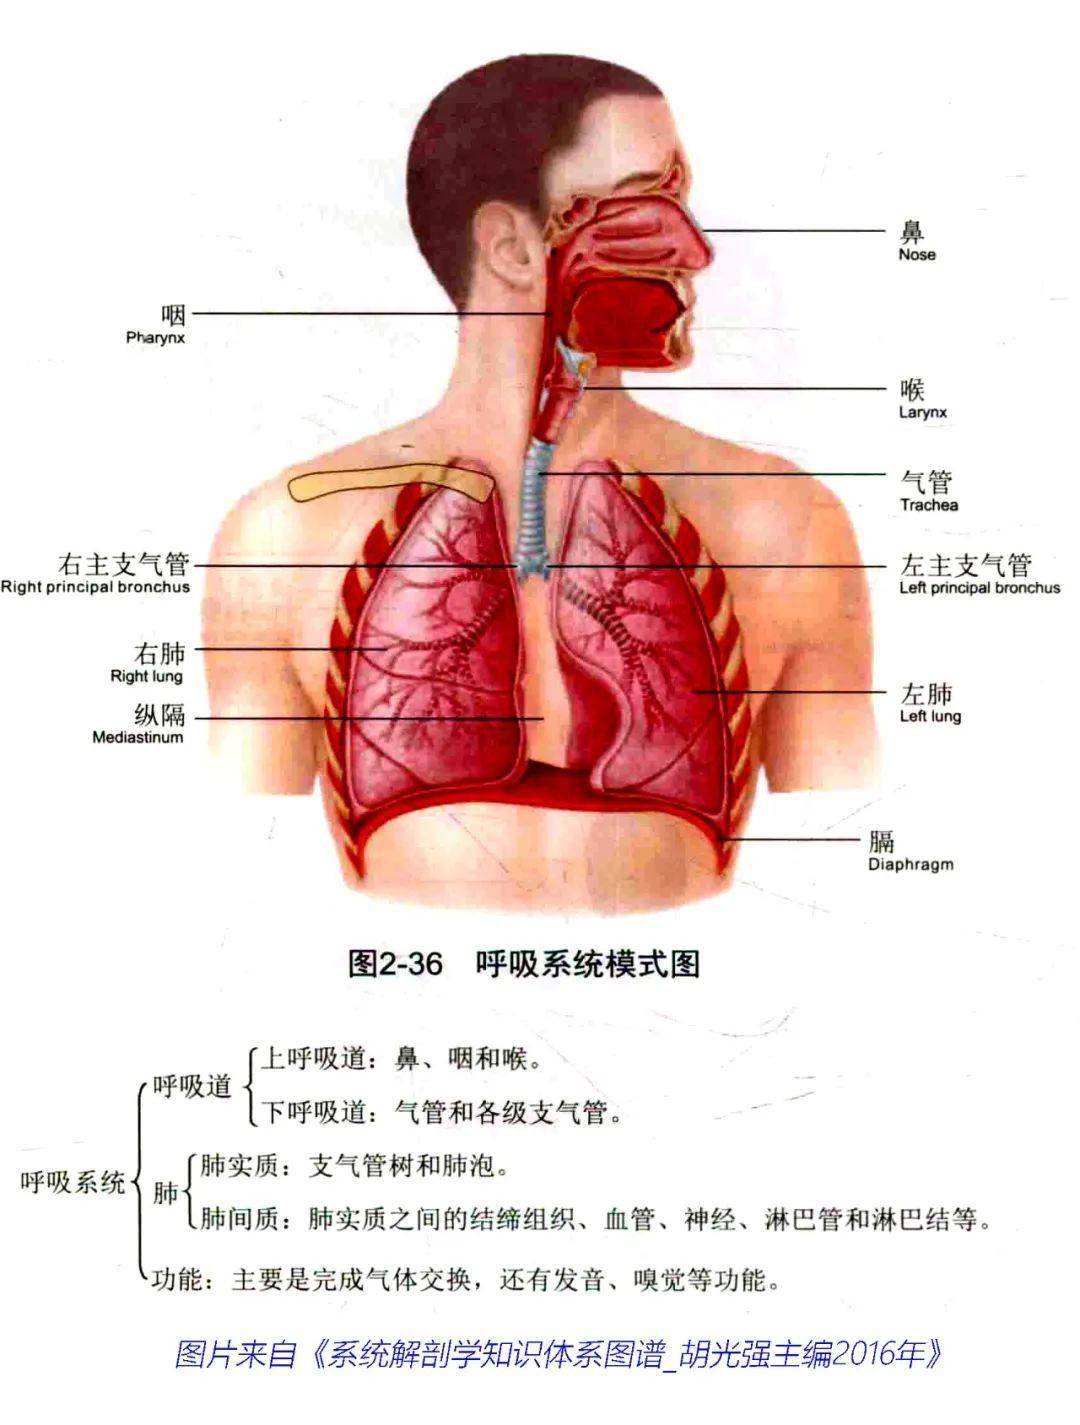 基础知识 | 呼吸道基础解剖知识复习